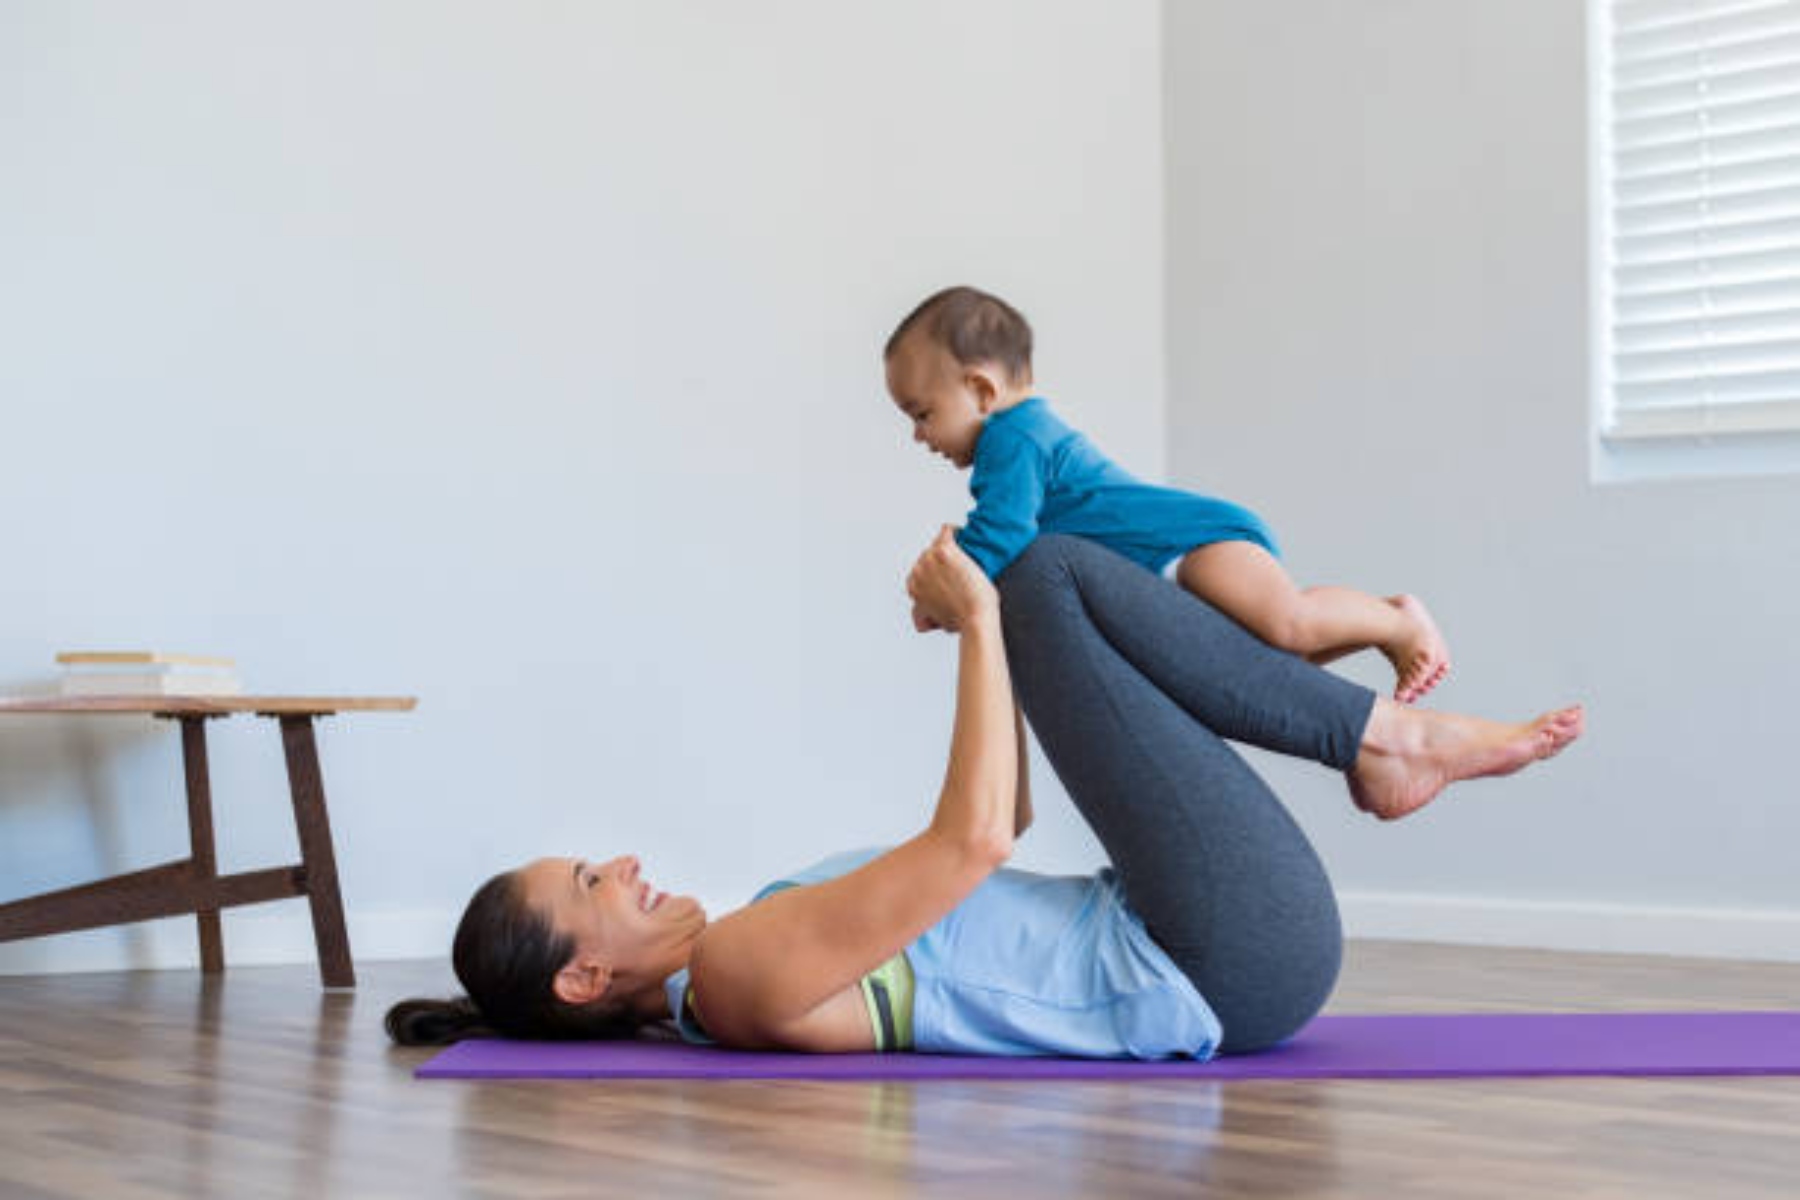 Άσκηση: Τα παιδιά αποτρέπουν τις κουρασμένες μητέρες από την άσκηση